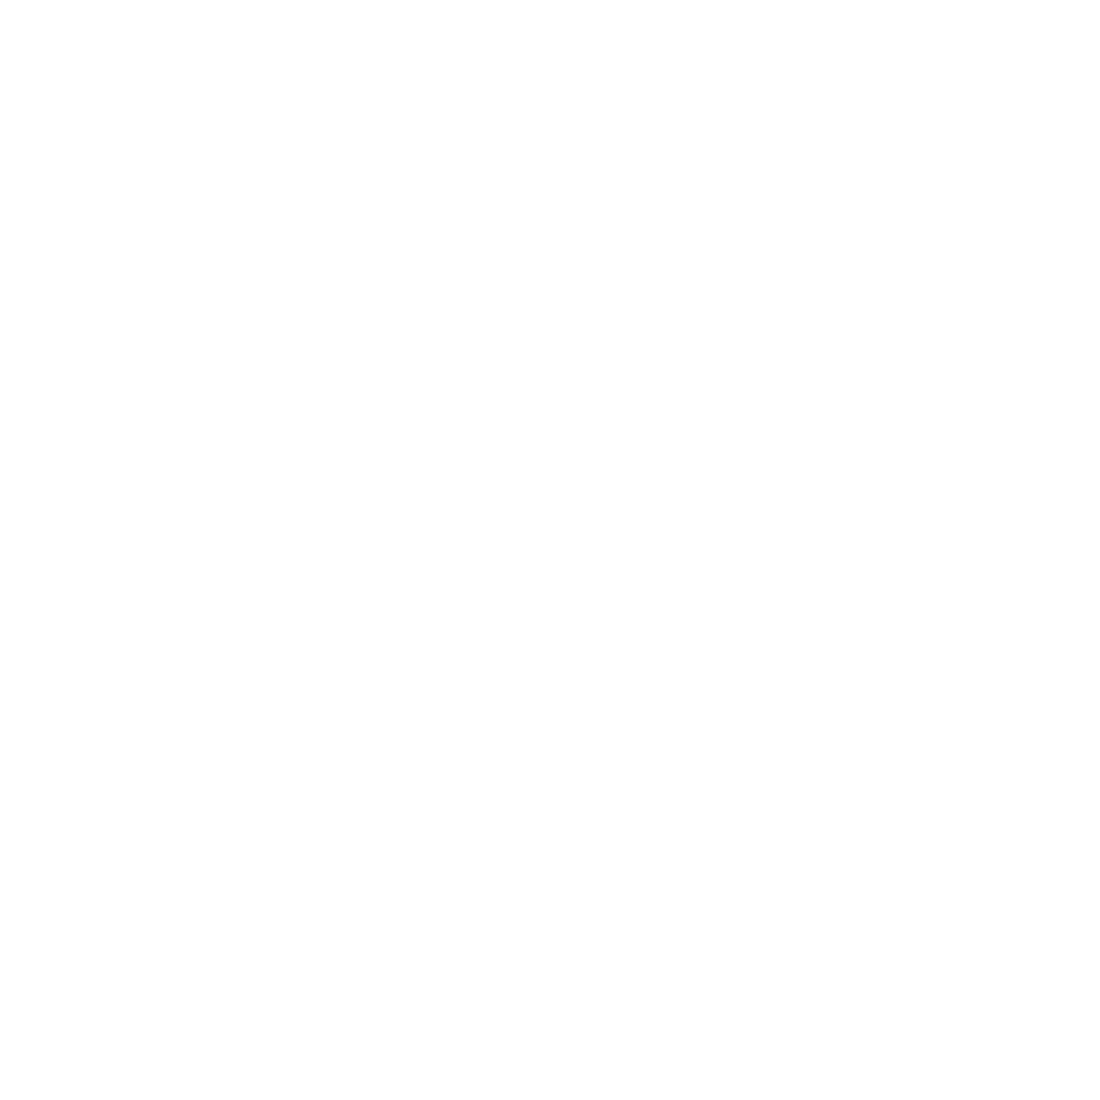 Marsh Family Songs